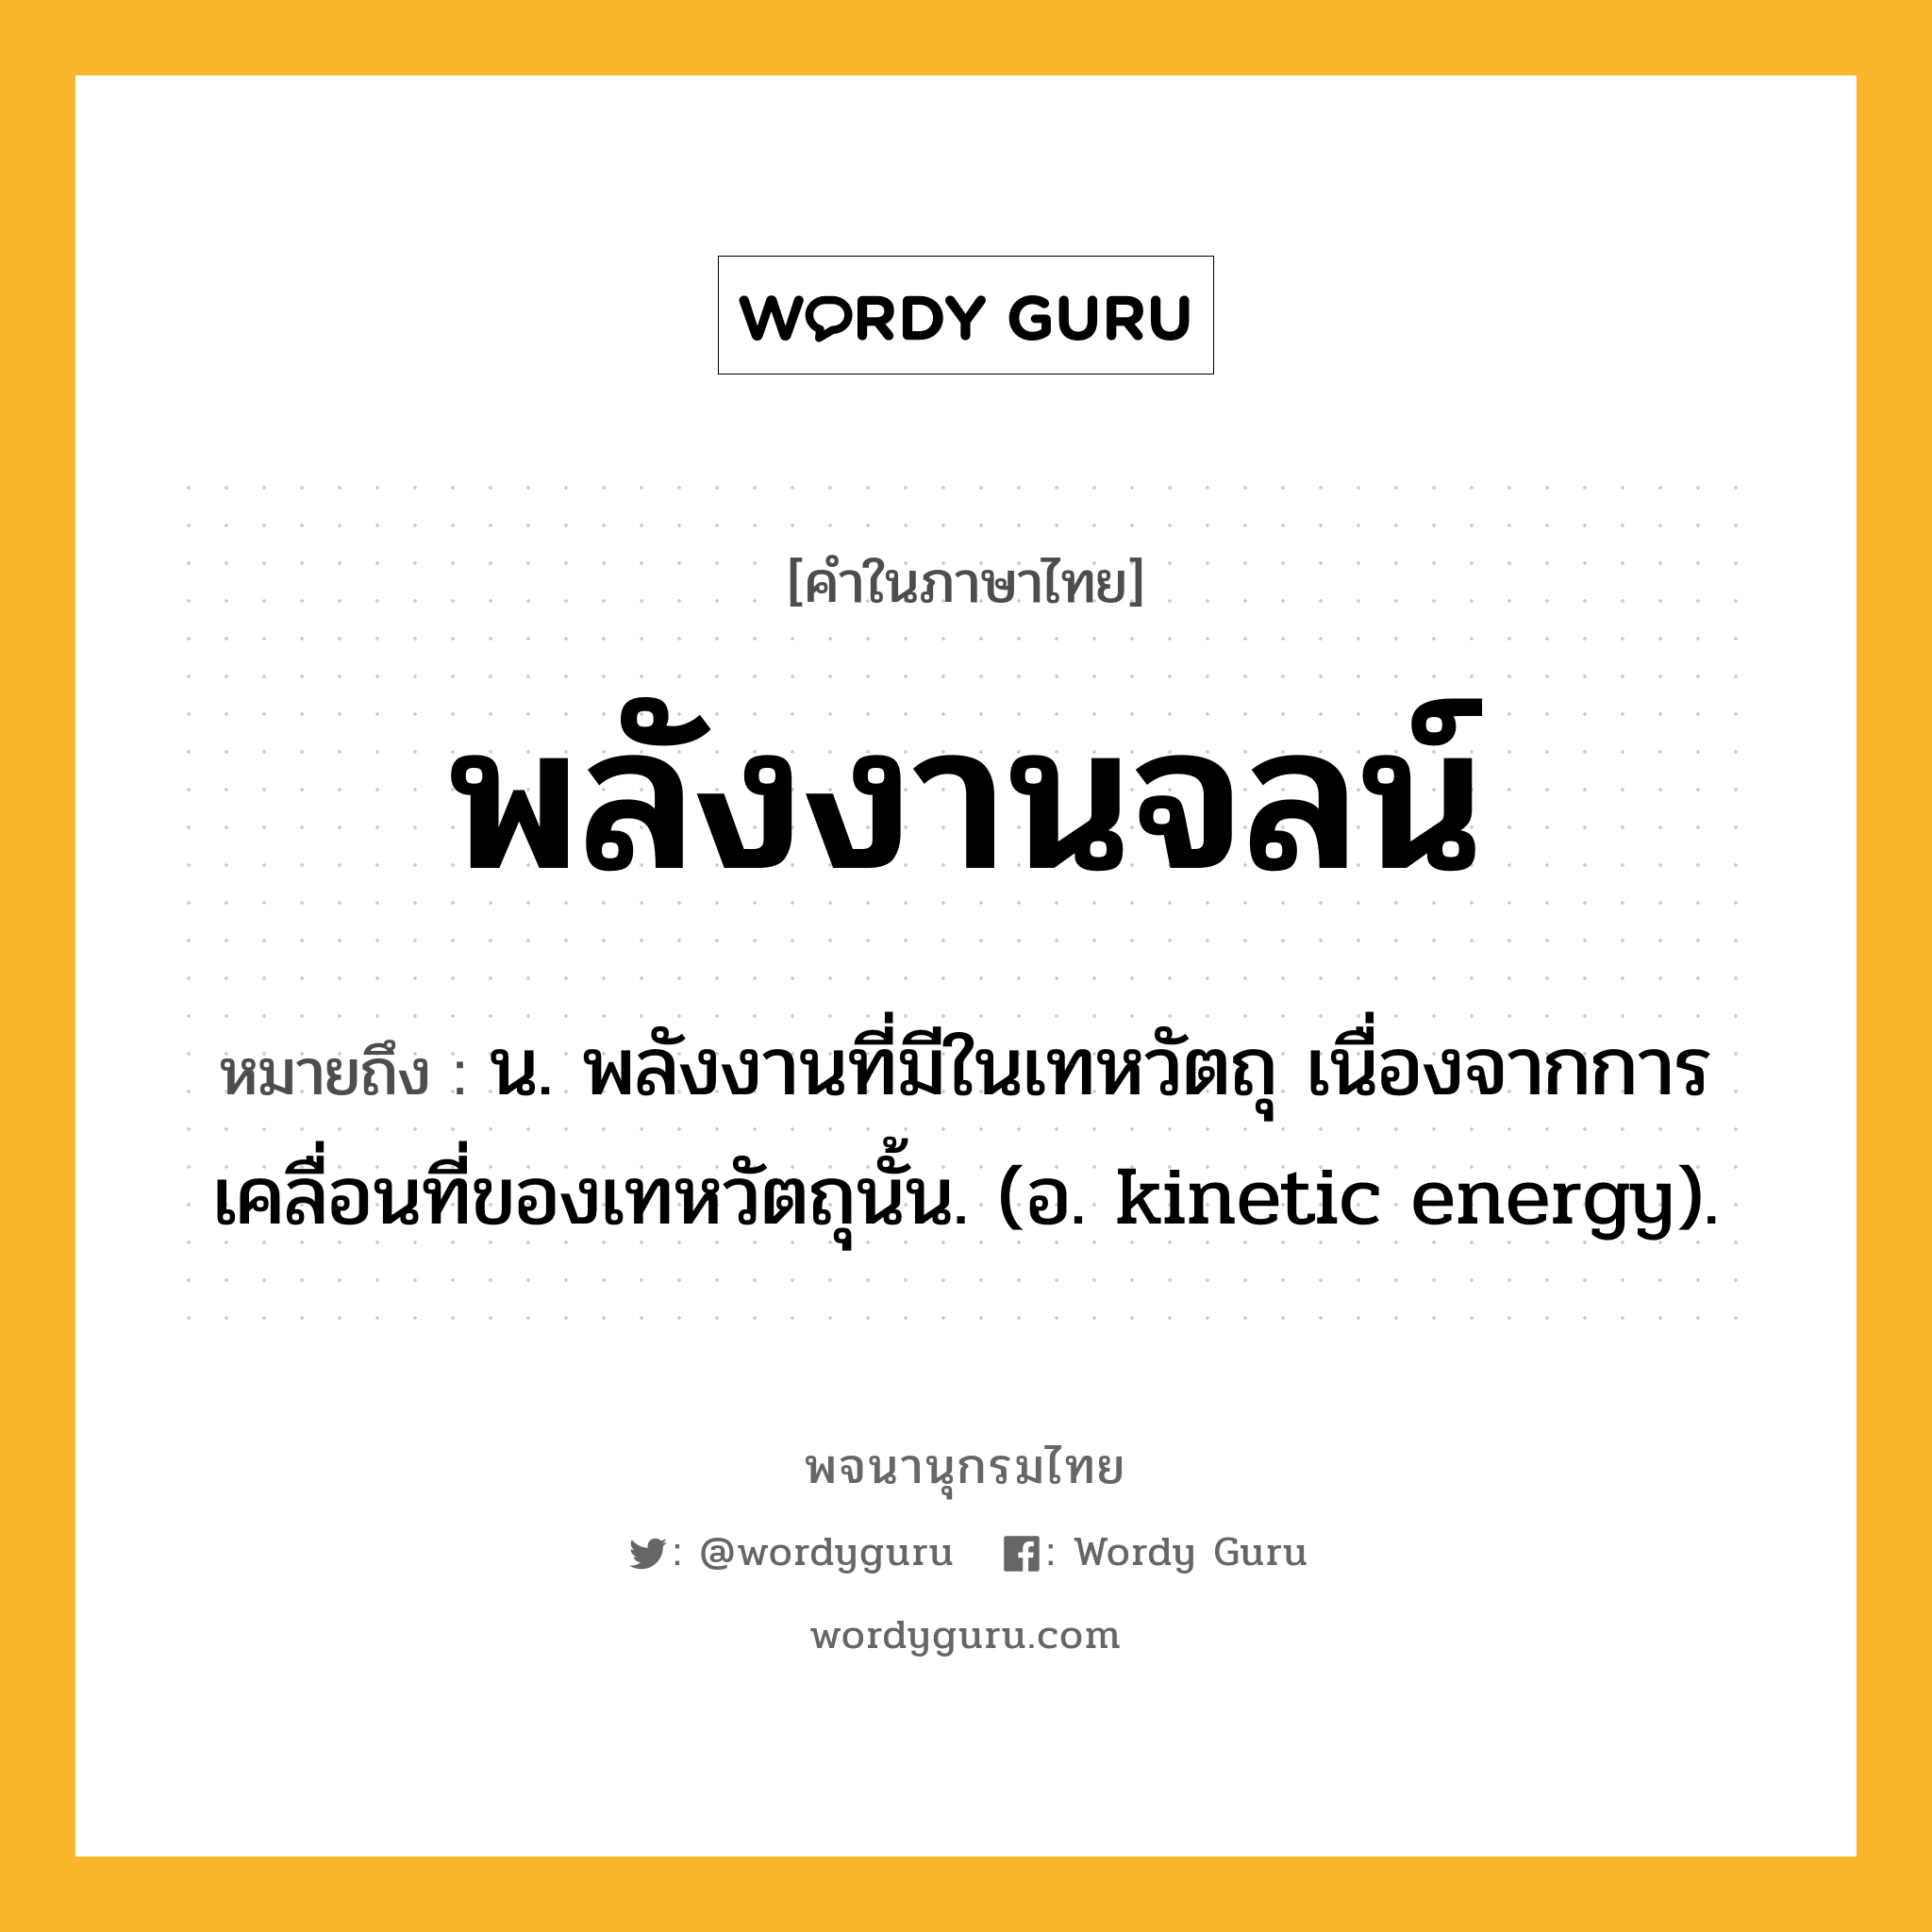 พลังงานจลน์ ความหมาย หมายถึงอะไร?, คำในภาษาไทย พลังงานจลน์ หมายถึง น. พลังงานที่มีในเทหวัตถุ เนื่องจากการเคลื่อนที่ของเทหวัตถุนั้น. (อ. kinetic energy).